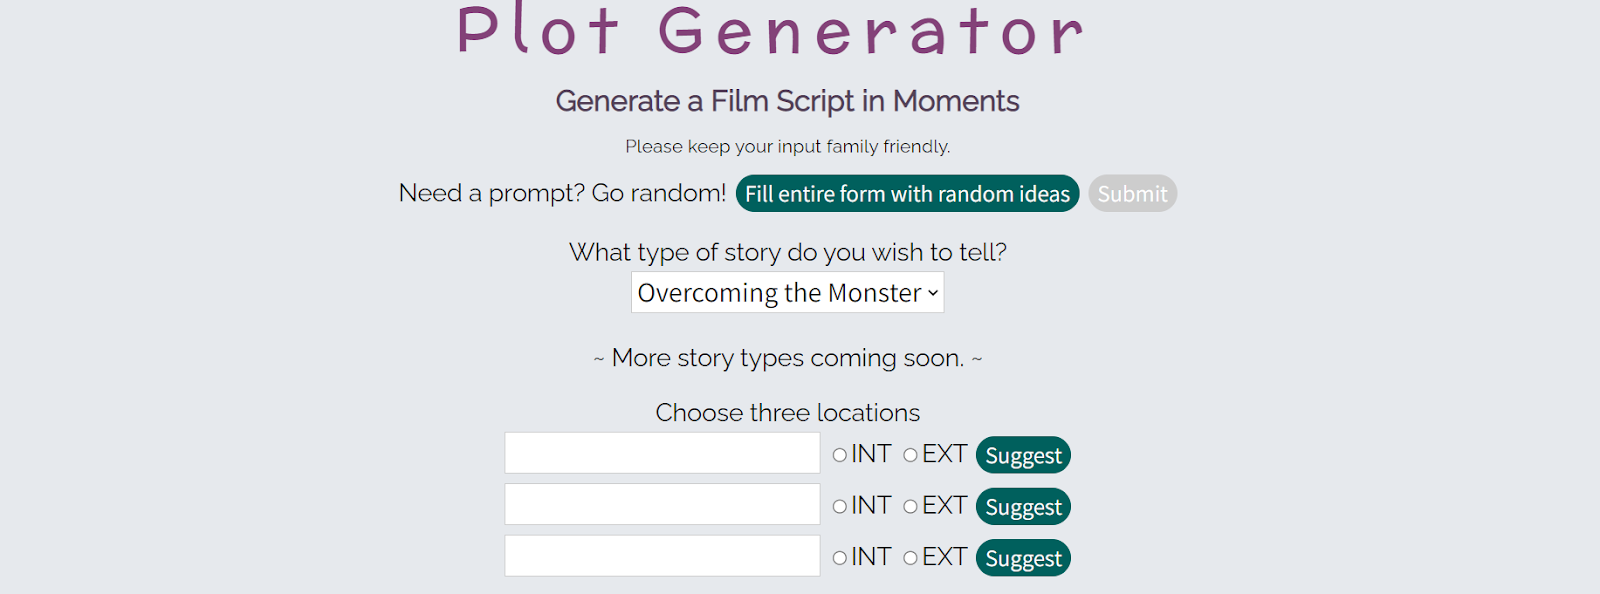 Generate a Film Script in moments